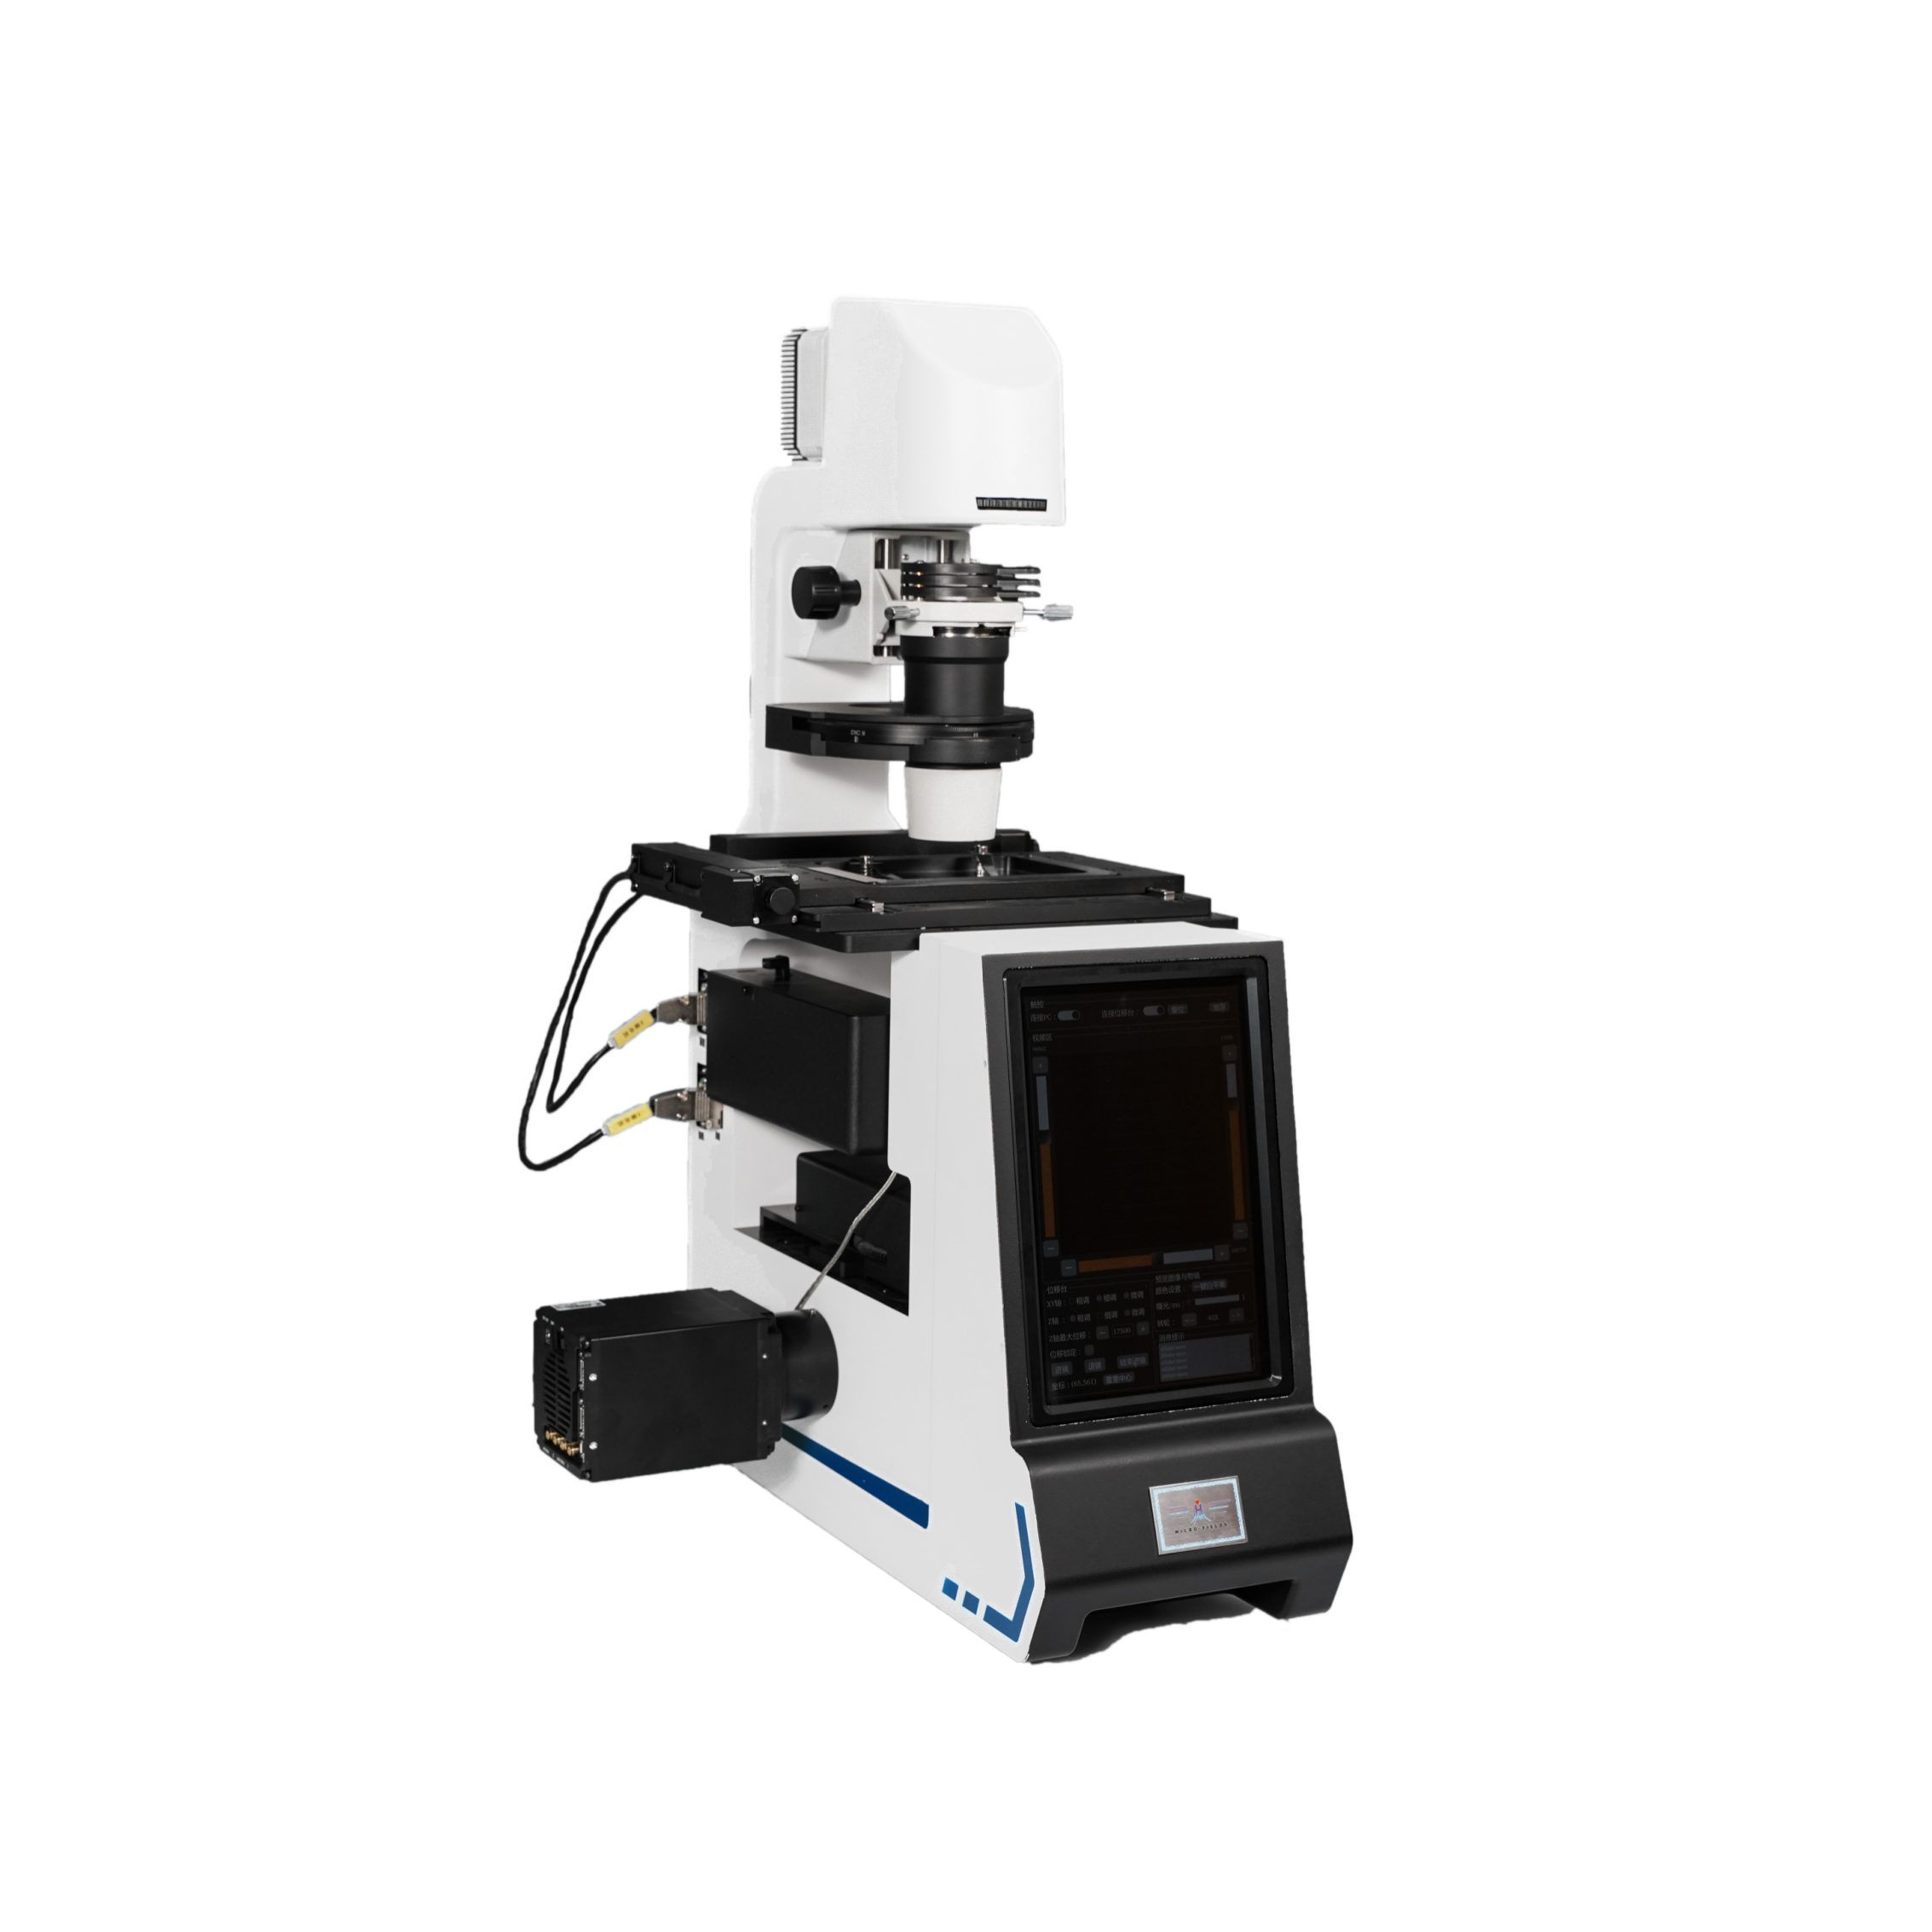 国产激光共聚焦显微镜HM-Con-02